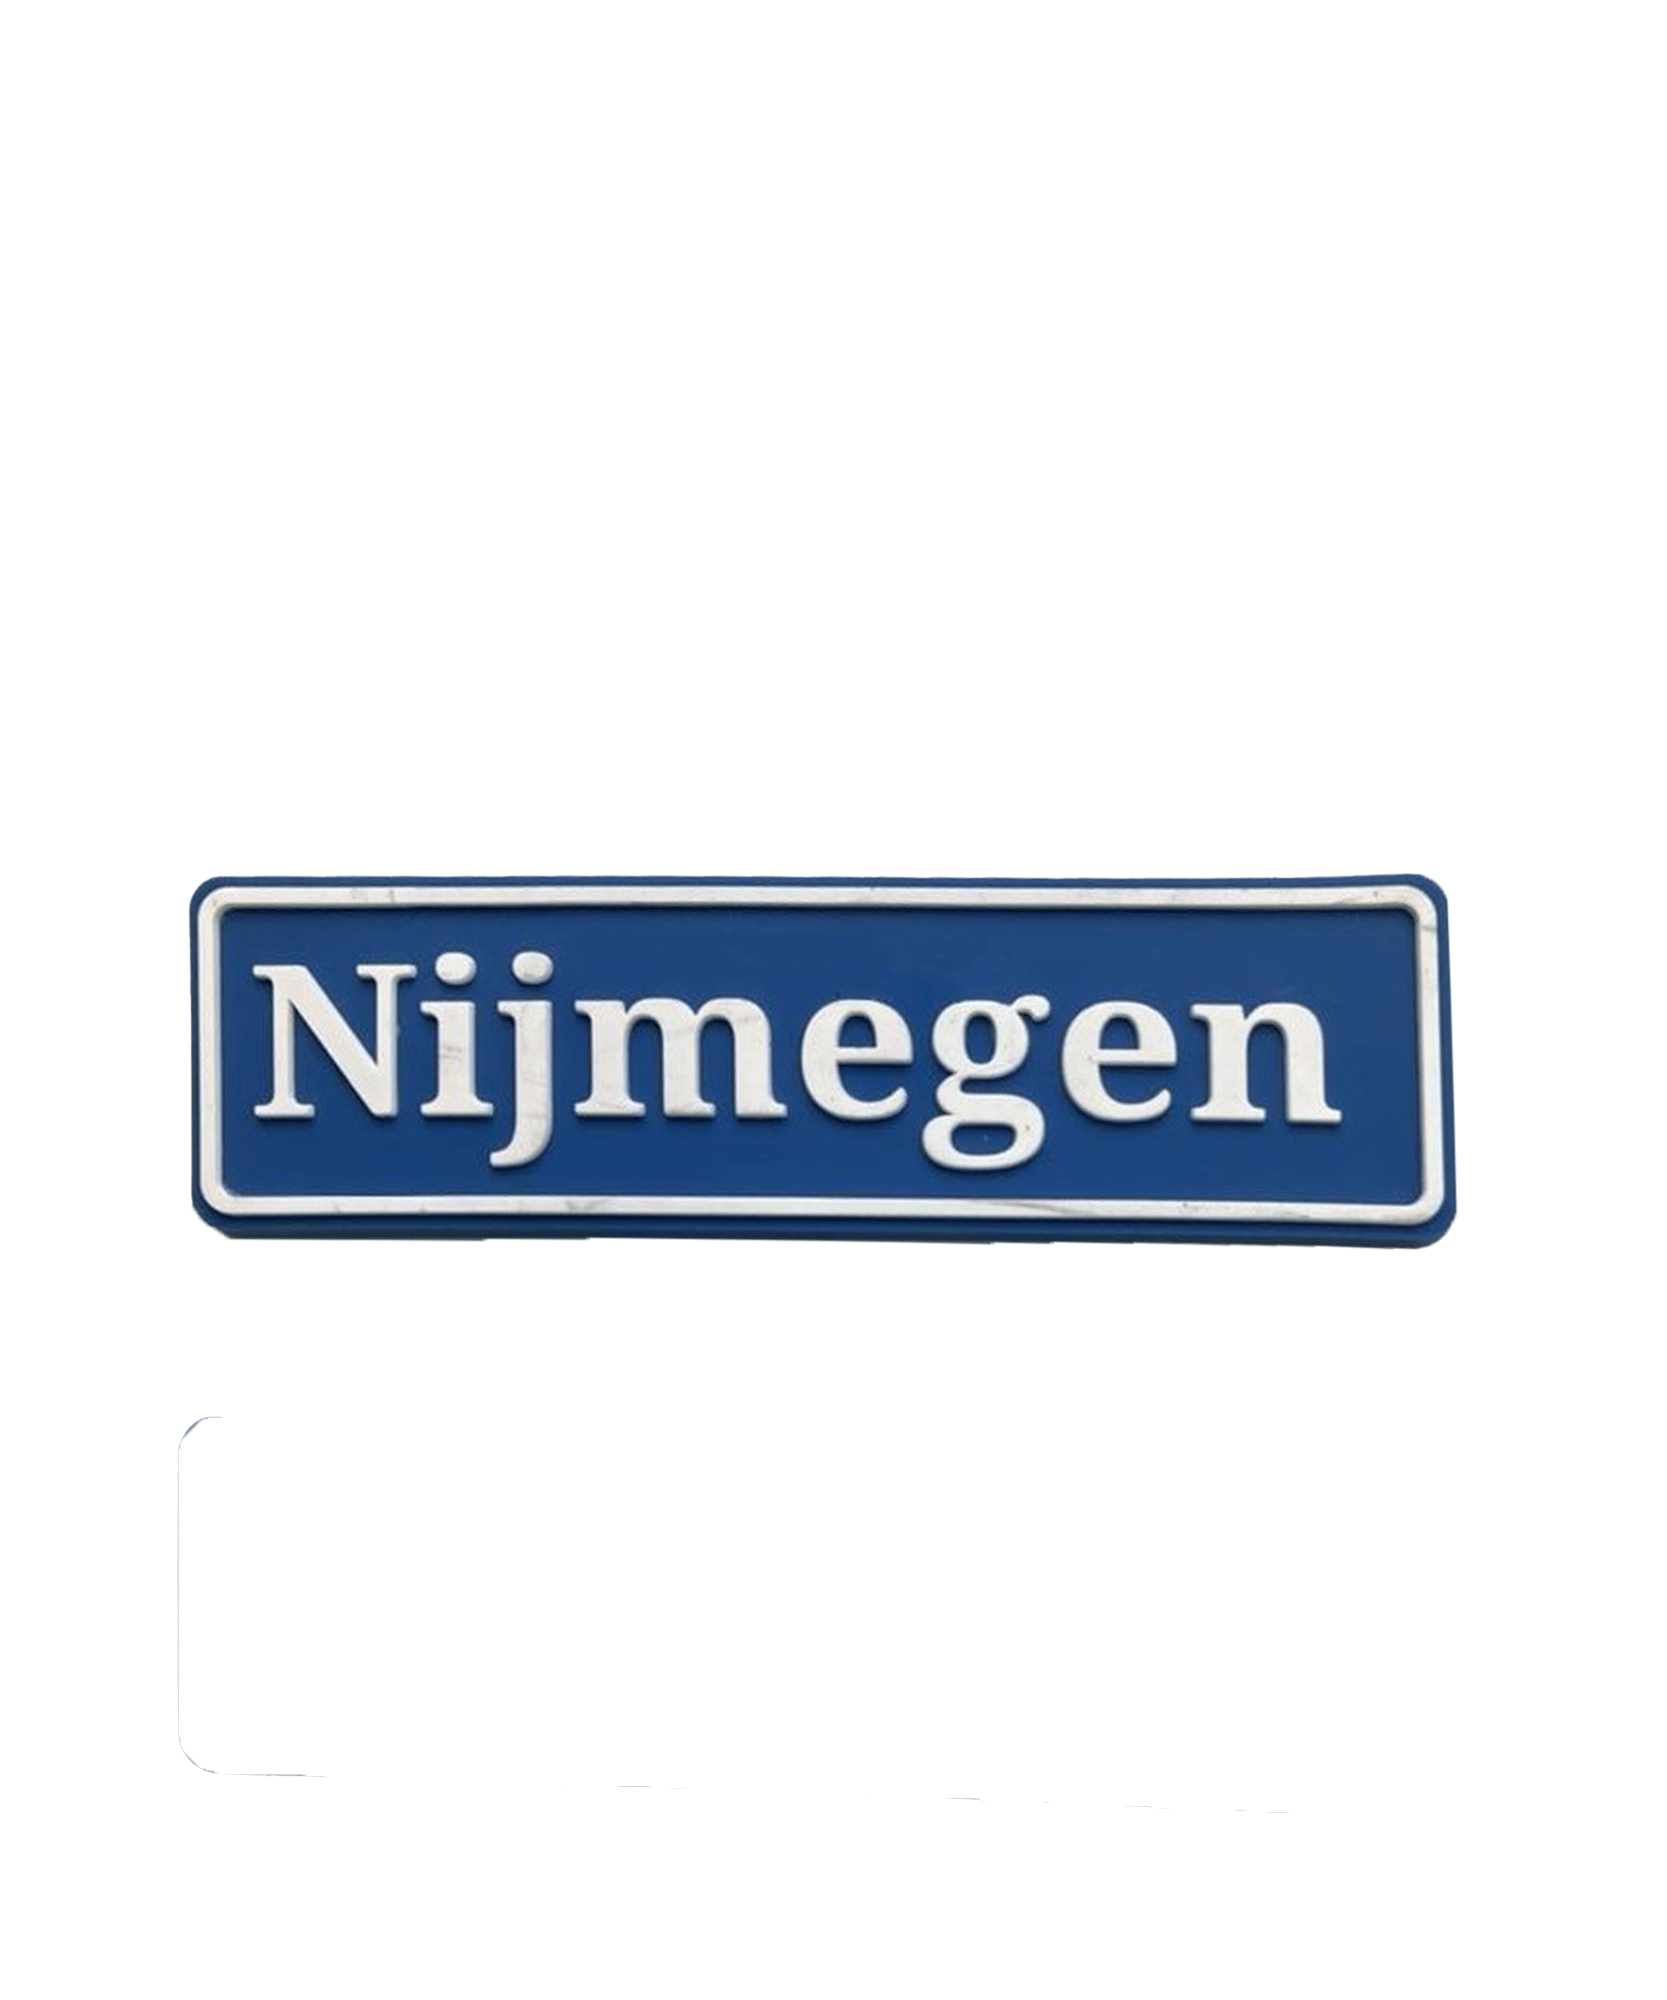 ILOVENIJMEGEN - Nijmegen  - Magneet - Verkeersbord